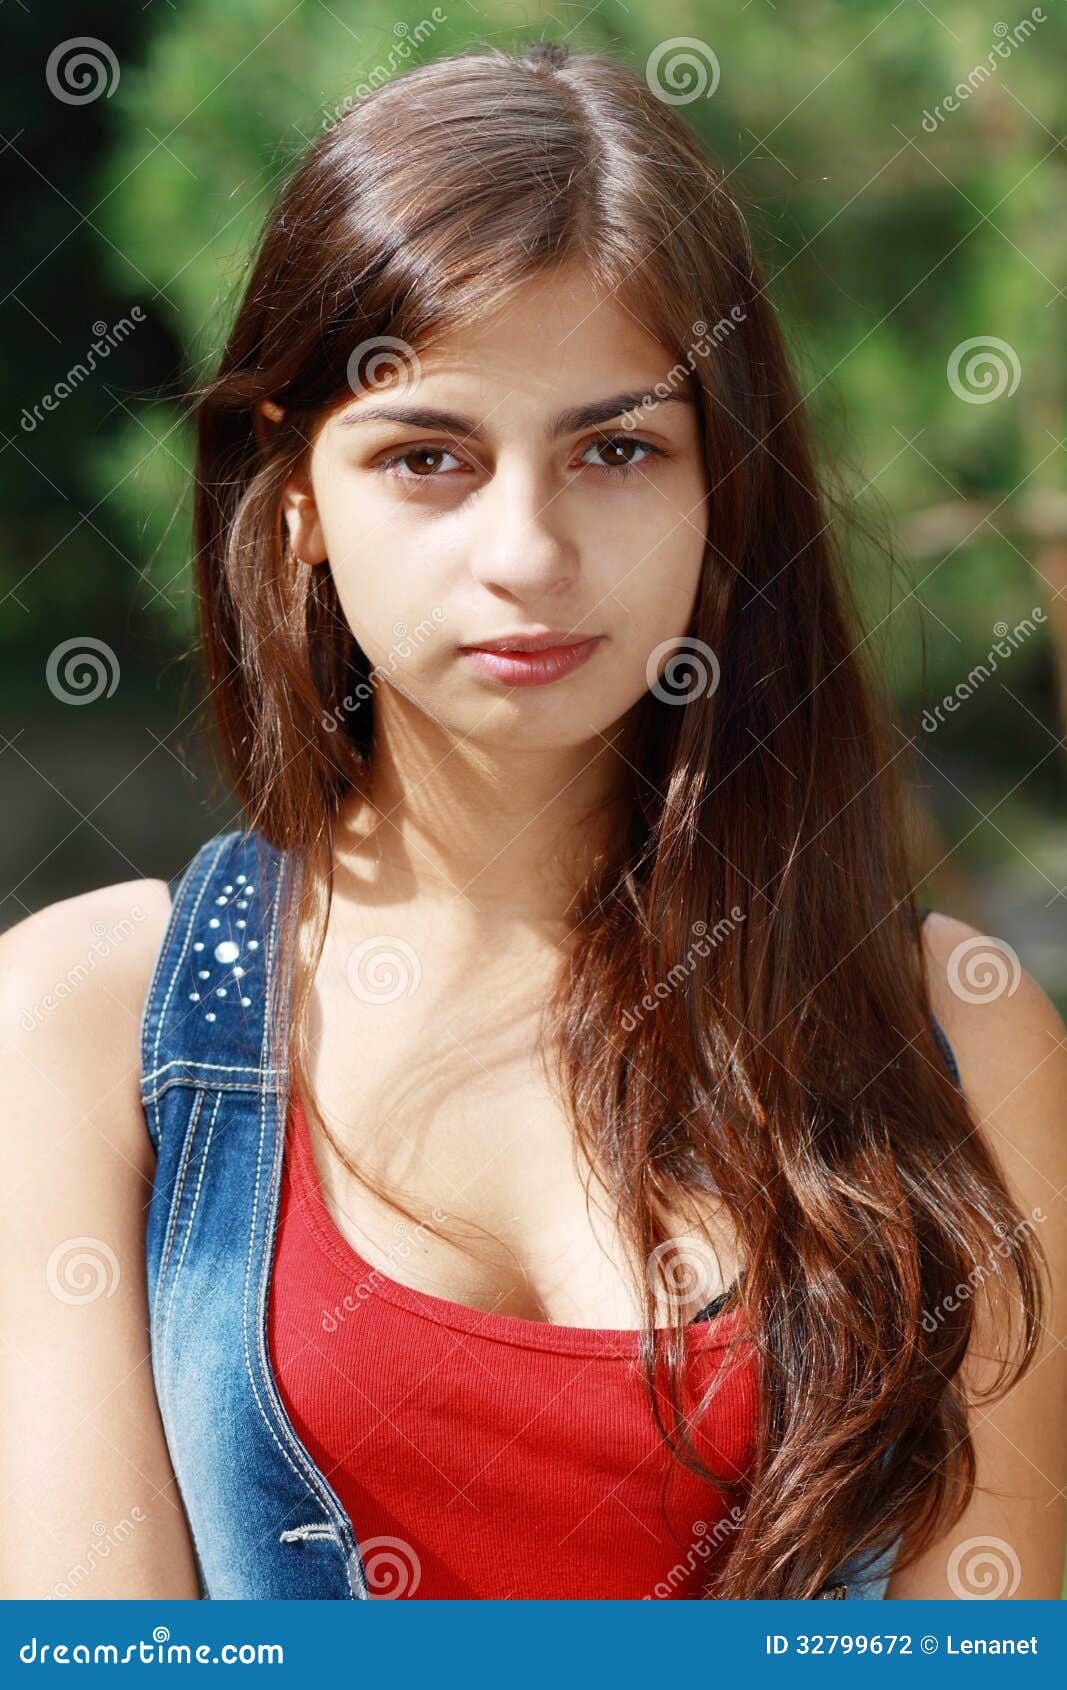 Beautiful Teenage Girl Stock Photography Image 3279